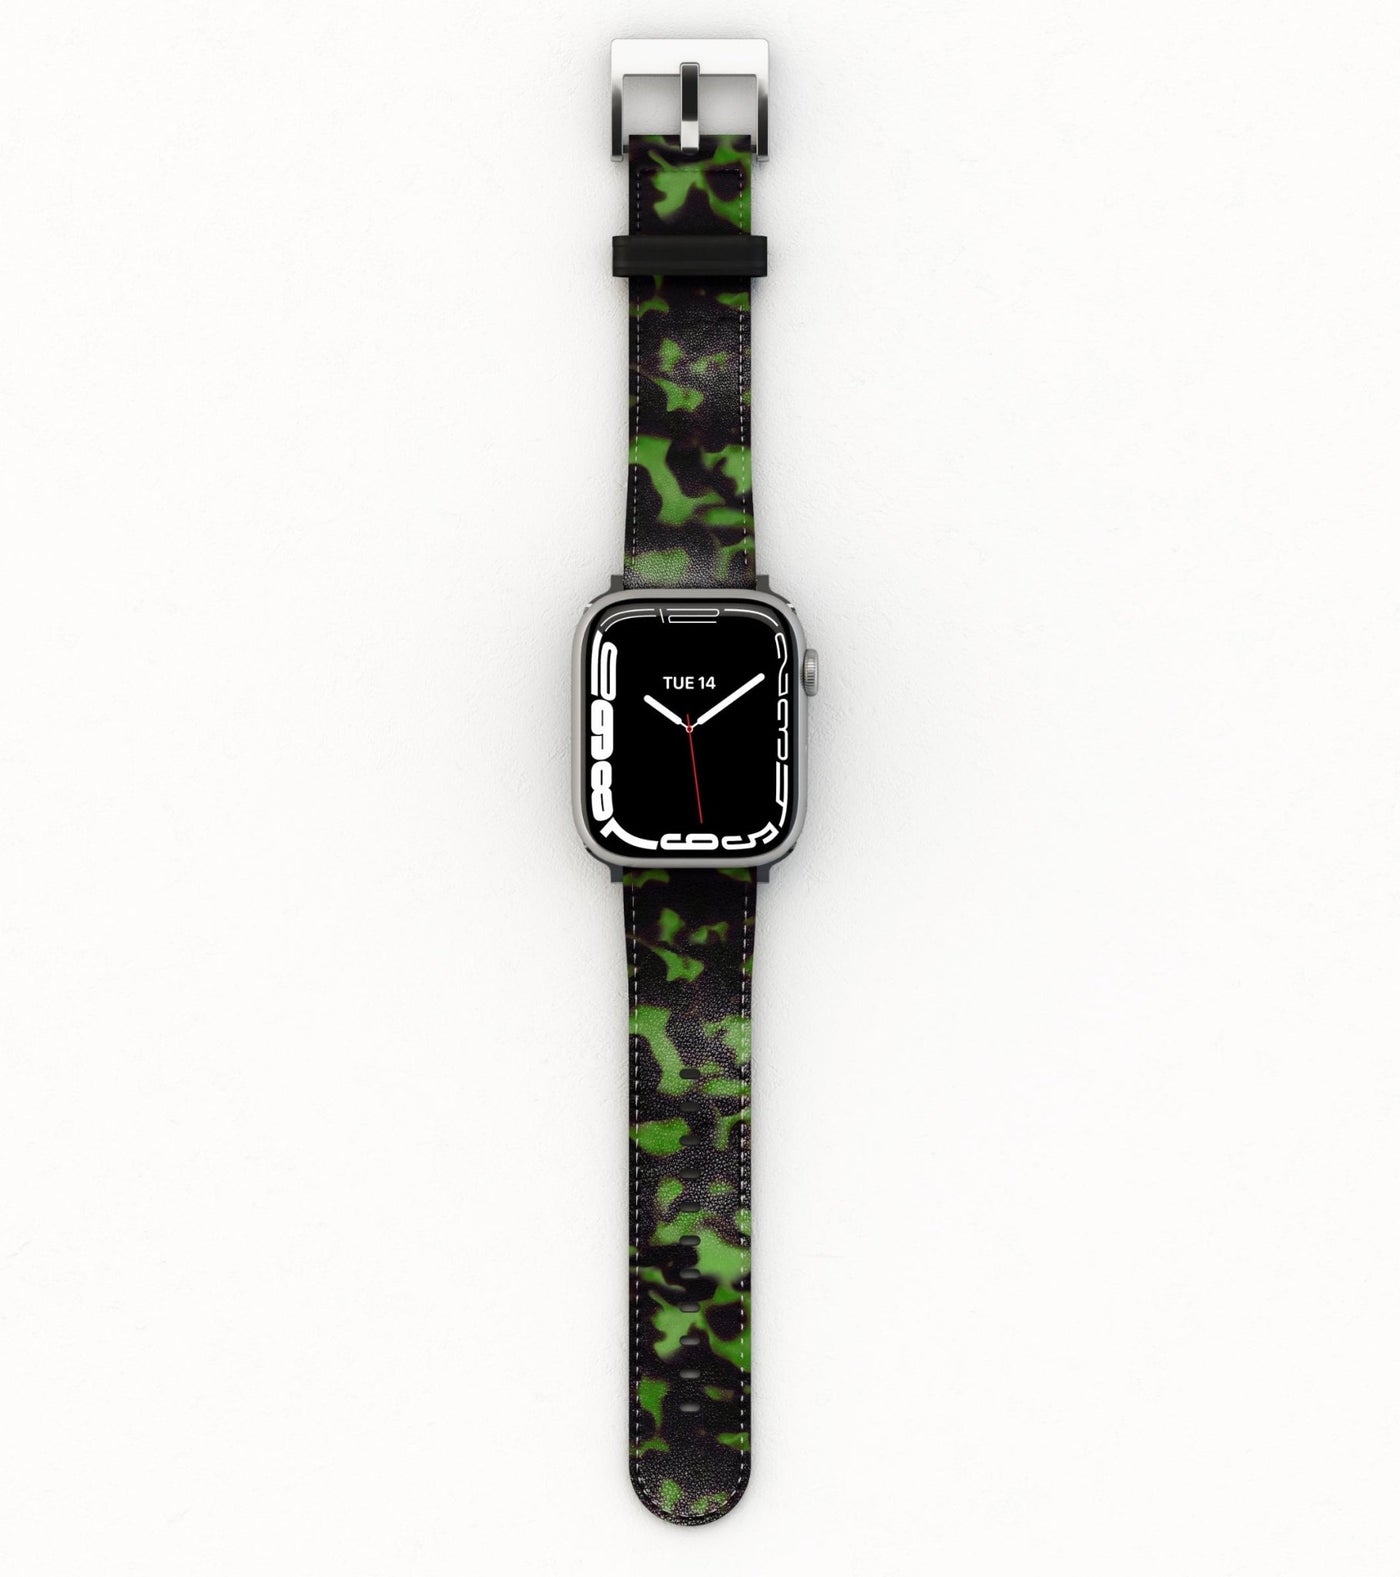 Nature's Nurture - Apple Watch Band